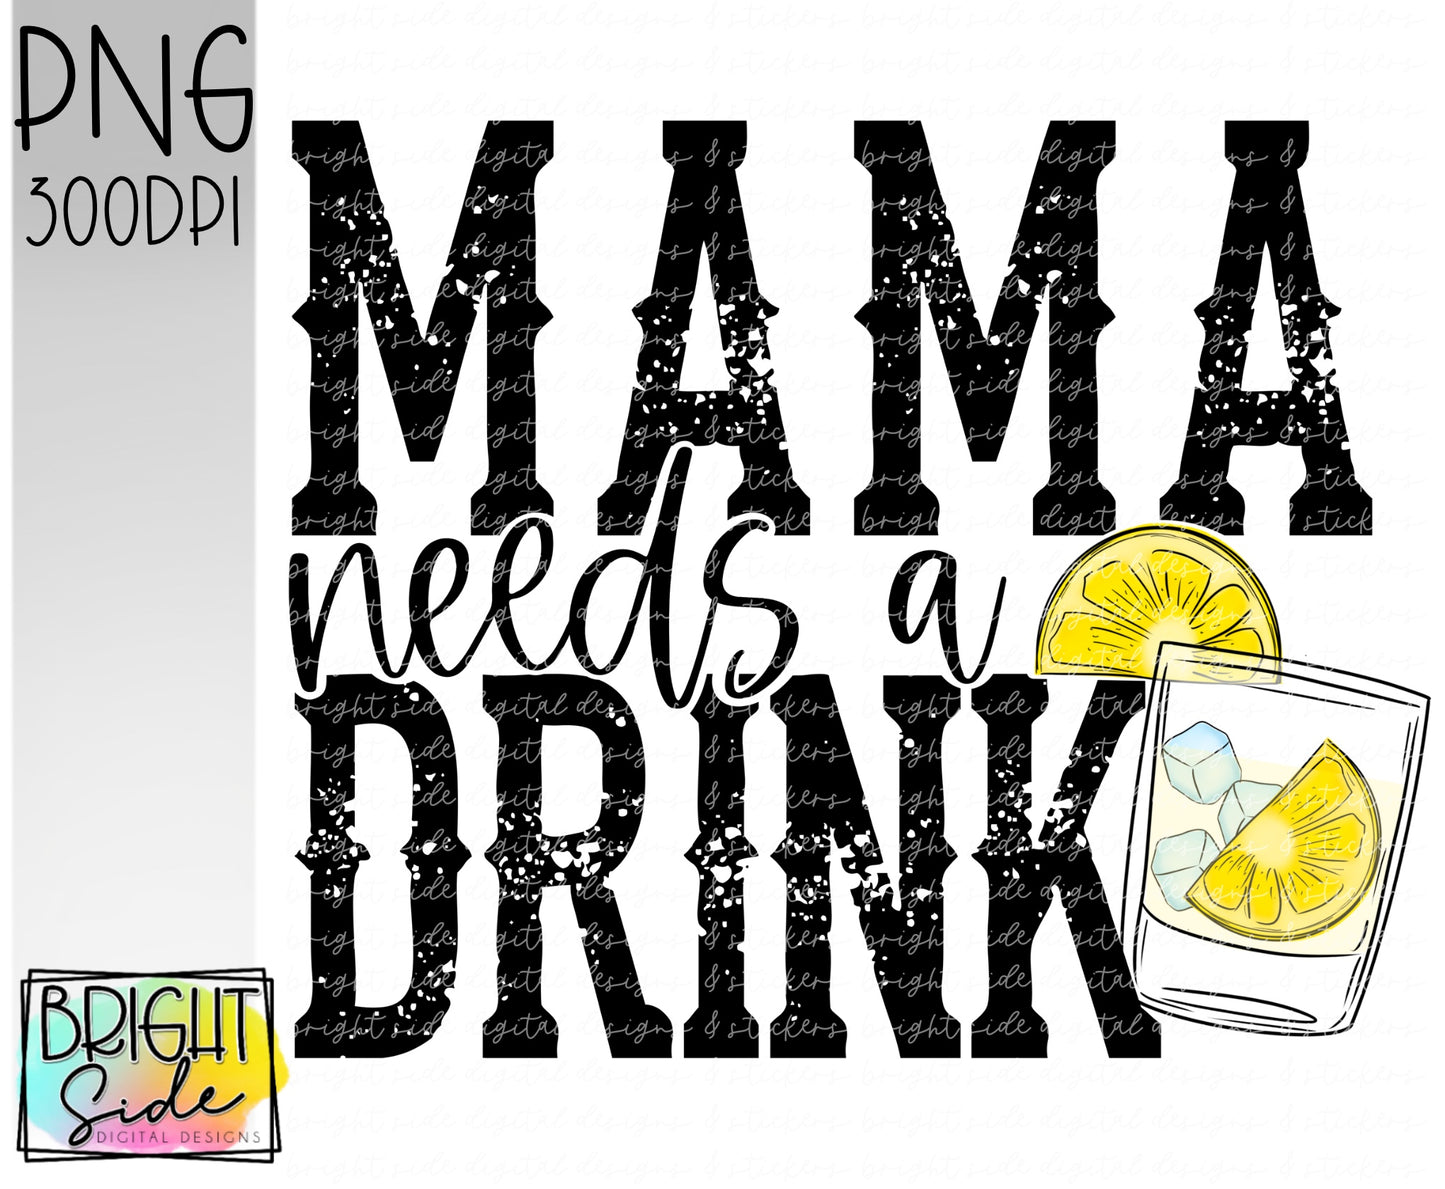 Mama needs a drink